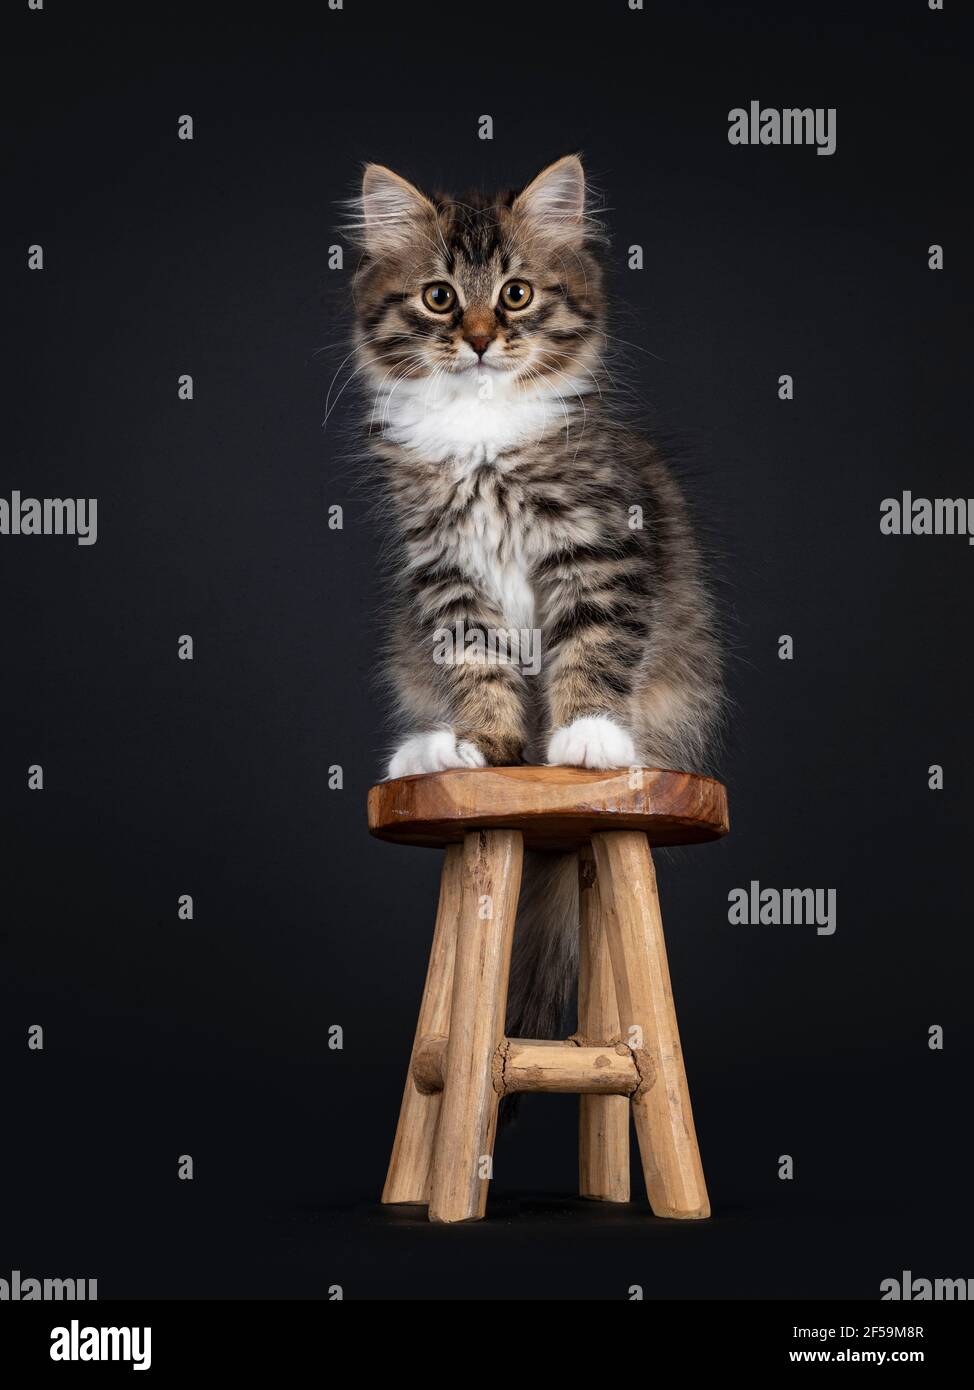 Adorable tabby noir avec chaton de chat de Sibérie blanc, assis face à l'avant sur un petit tabouret en bois. Regarder directement vers l'appareil photo. Isolé sur fond noir Banque D'Images